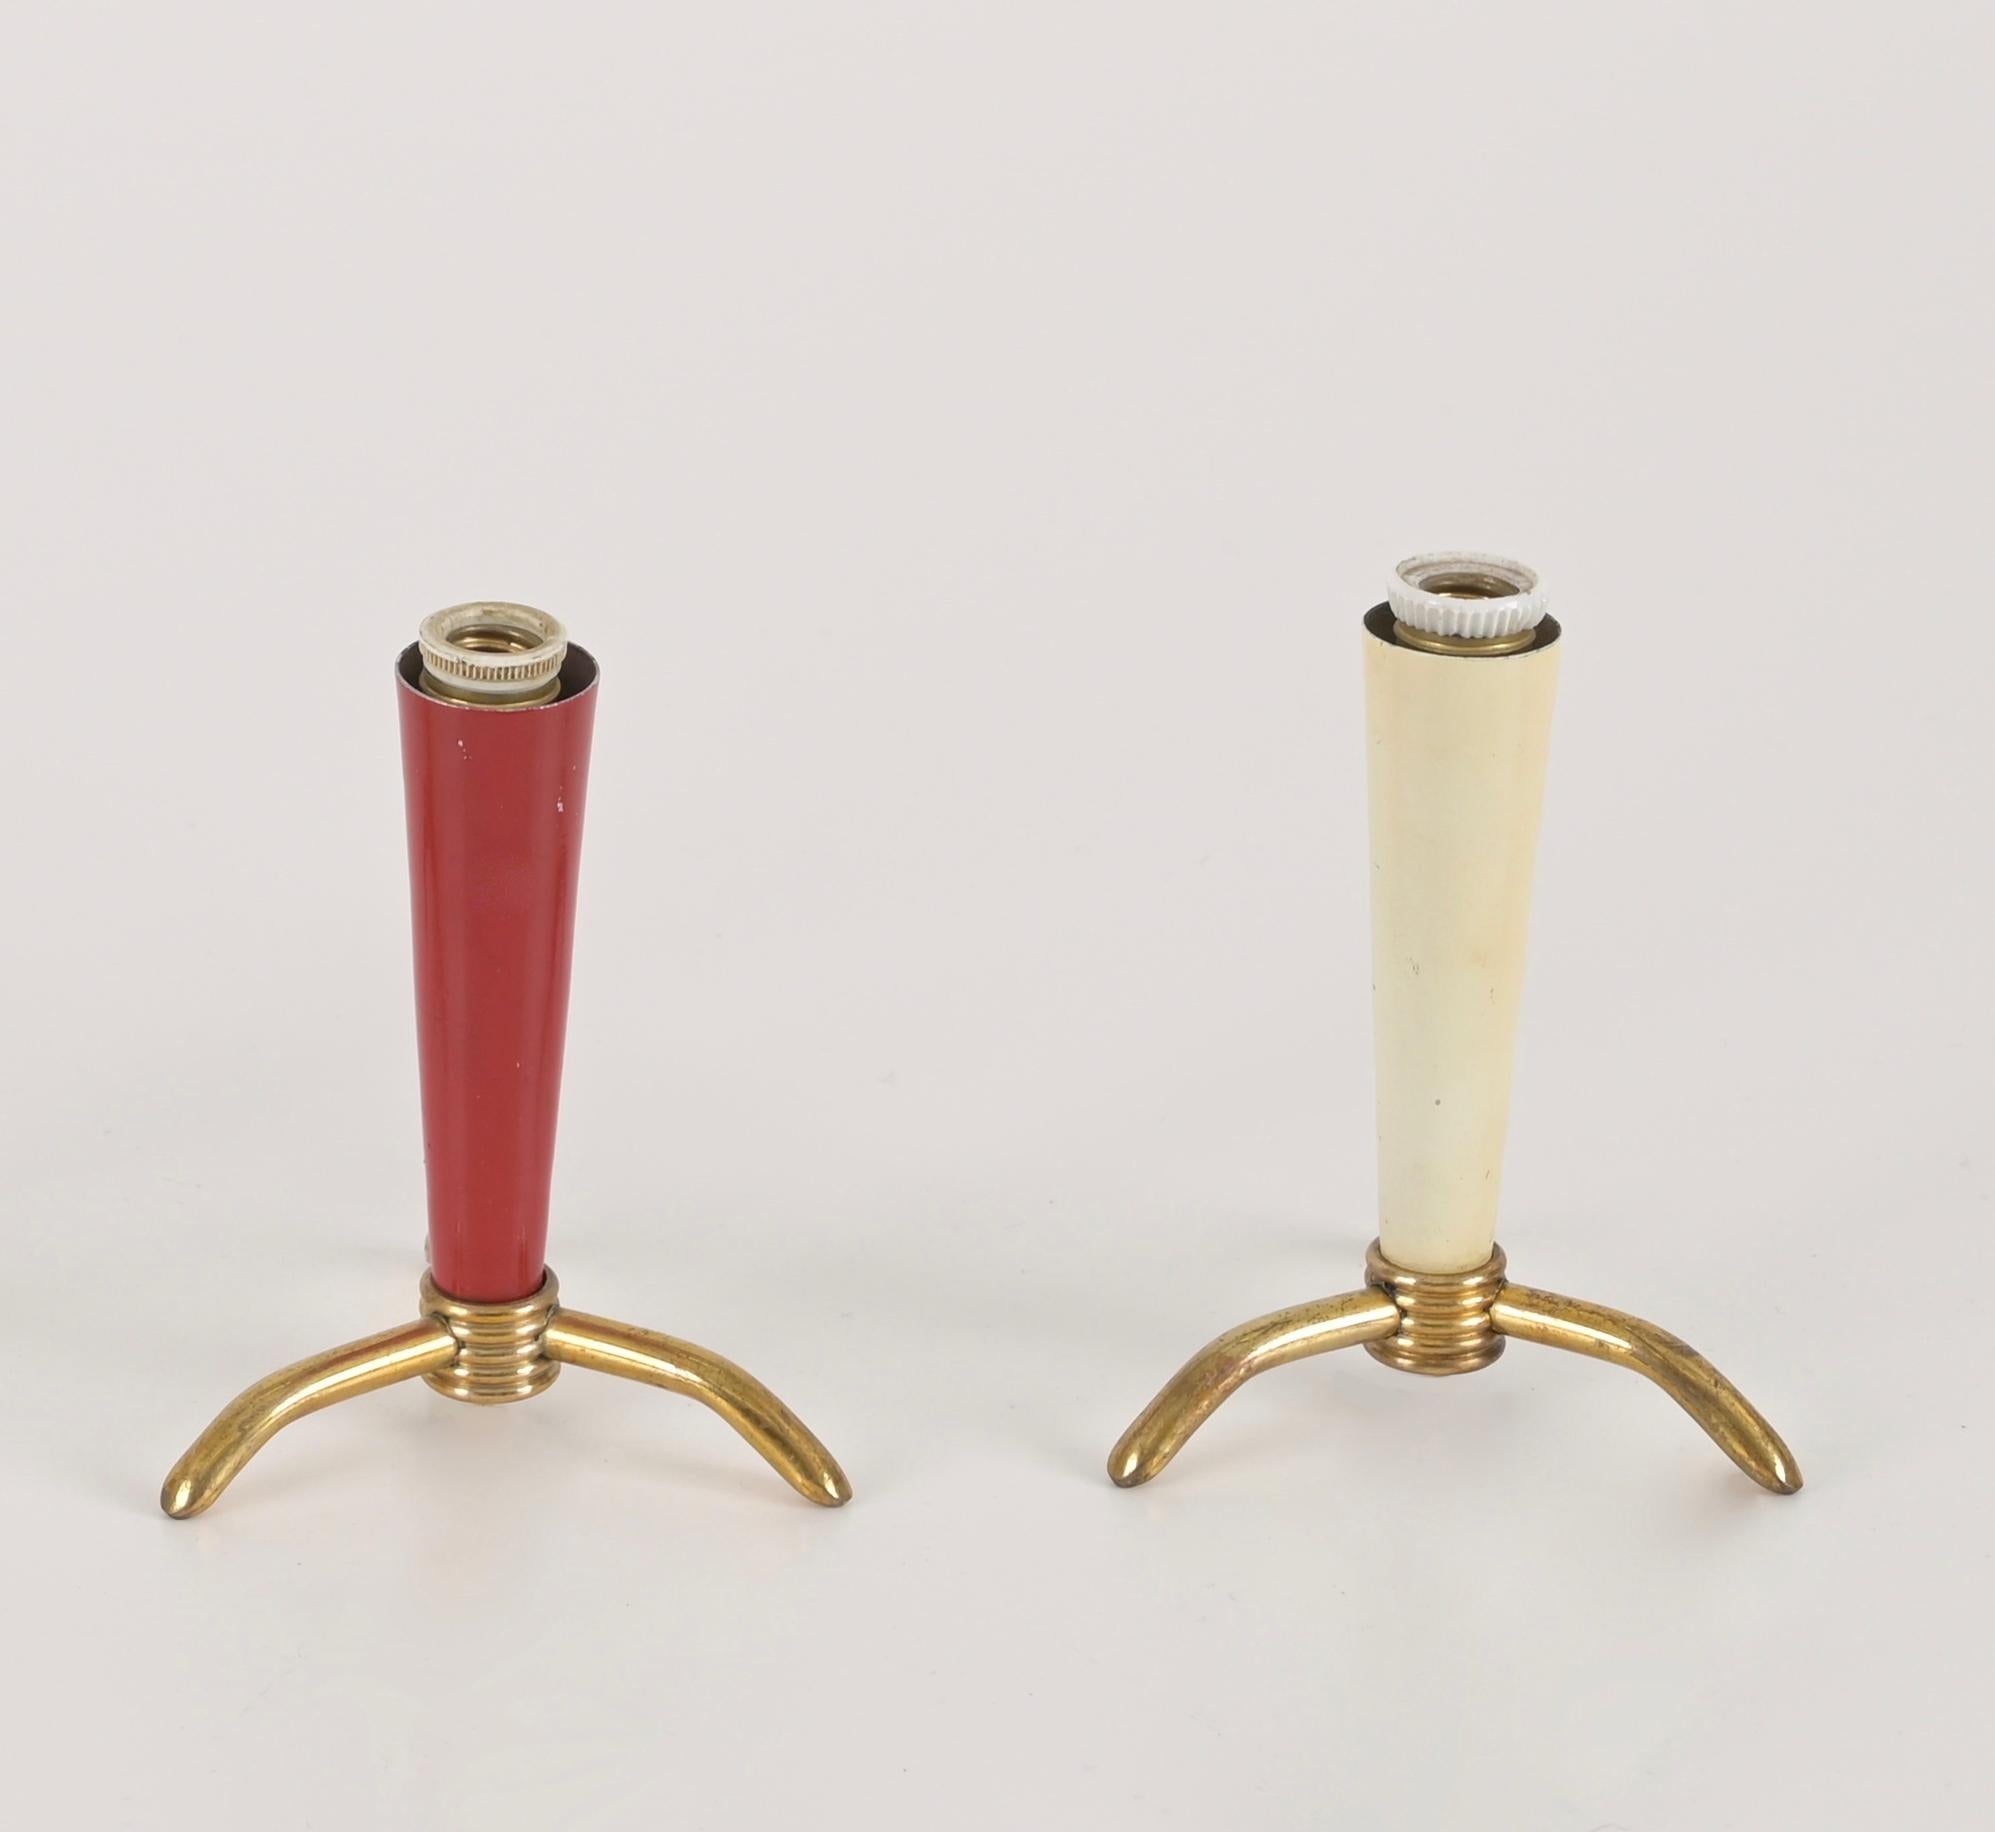 Charmantes Paar dreibeiniger Tischlampen aus Messing und emailliertem Metall. Diese schönen Lampen werden Stilnovo zugeschrieben und wurden in den 1950er Jahren in Italien hergestellt.

Die kleinen Lampen haben einen reizvollen kegelförmigen Schirm